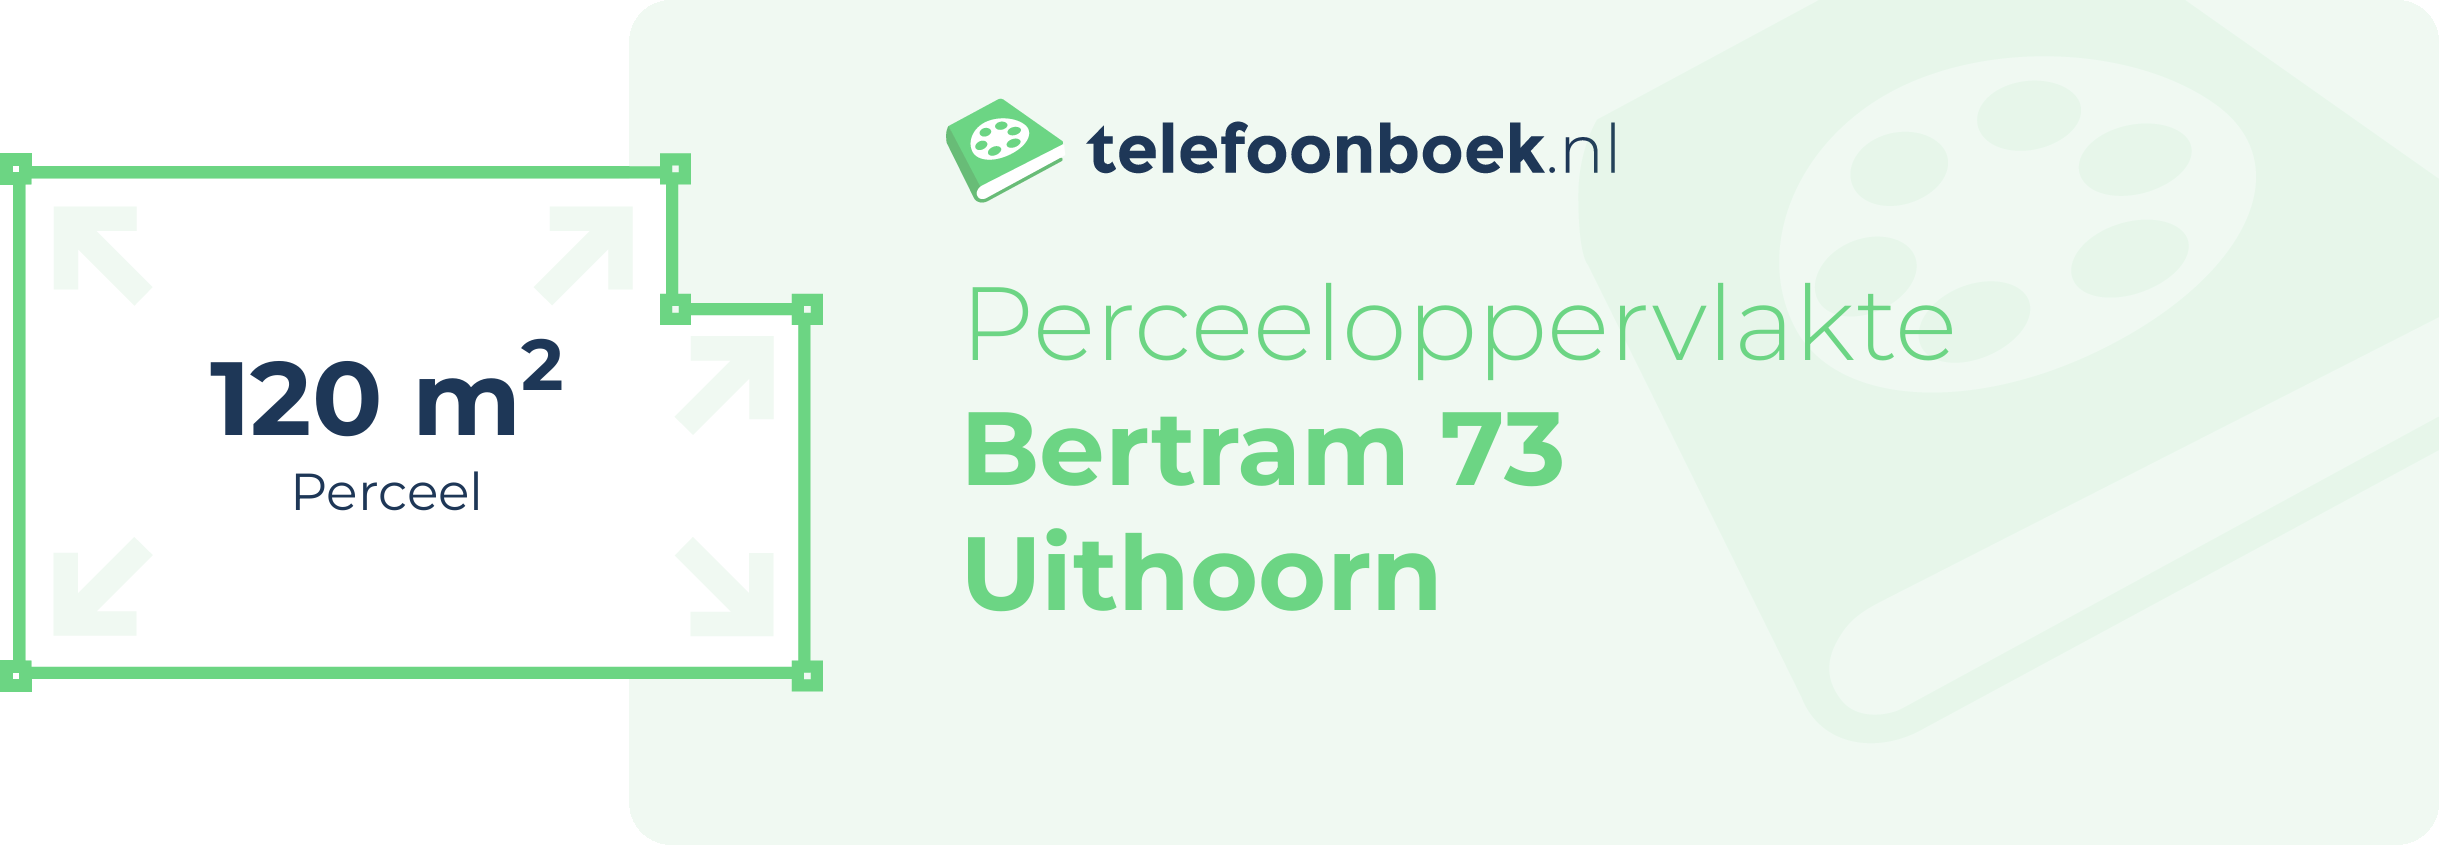 Perceeloppervlakte Bertram 73 Uithoorn